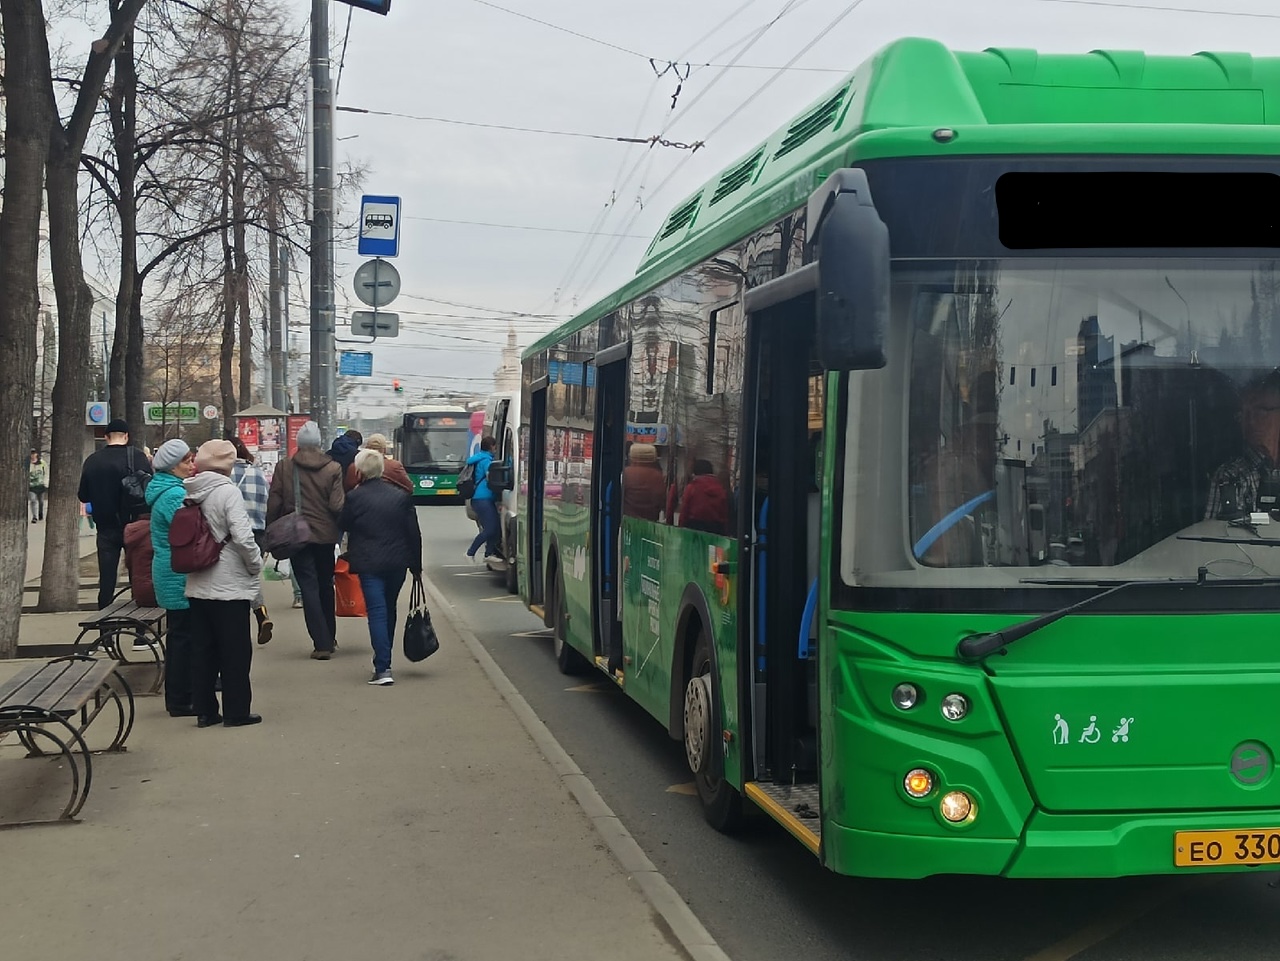 Лужа крови и бабушка молчит: в Челябинске автобус проехал по пенсионерке